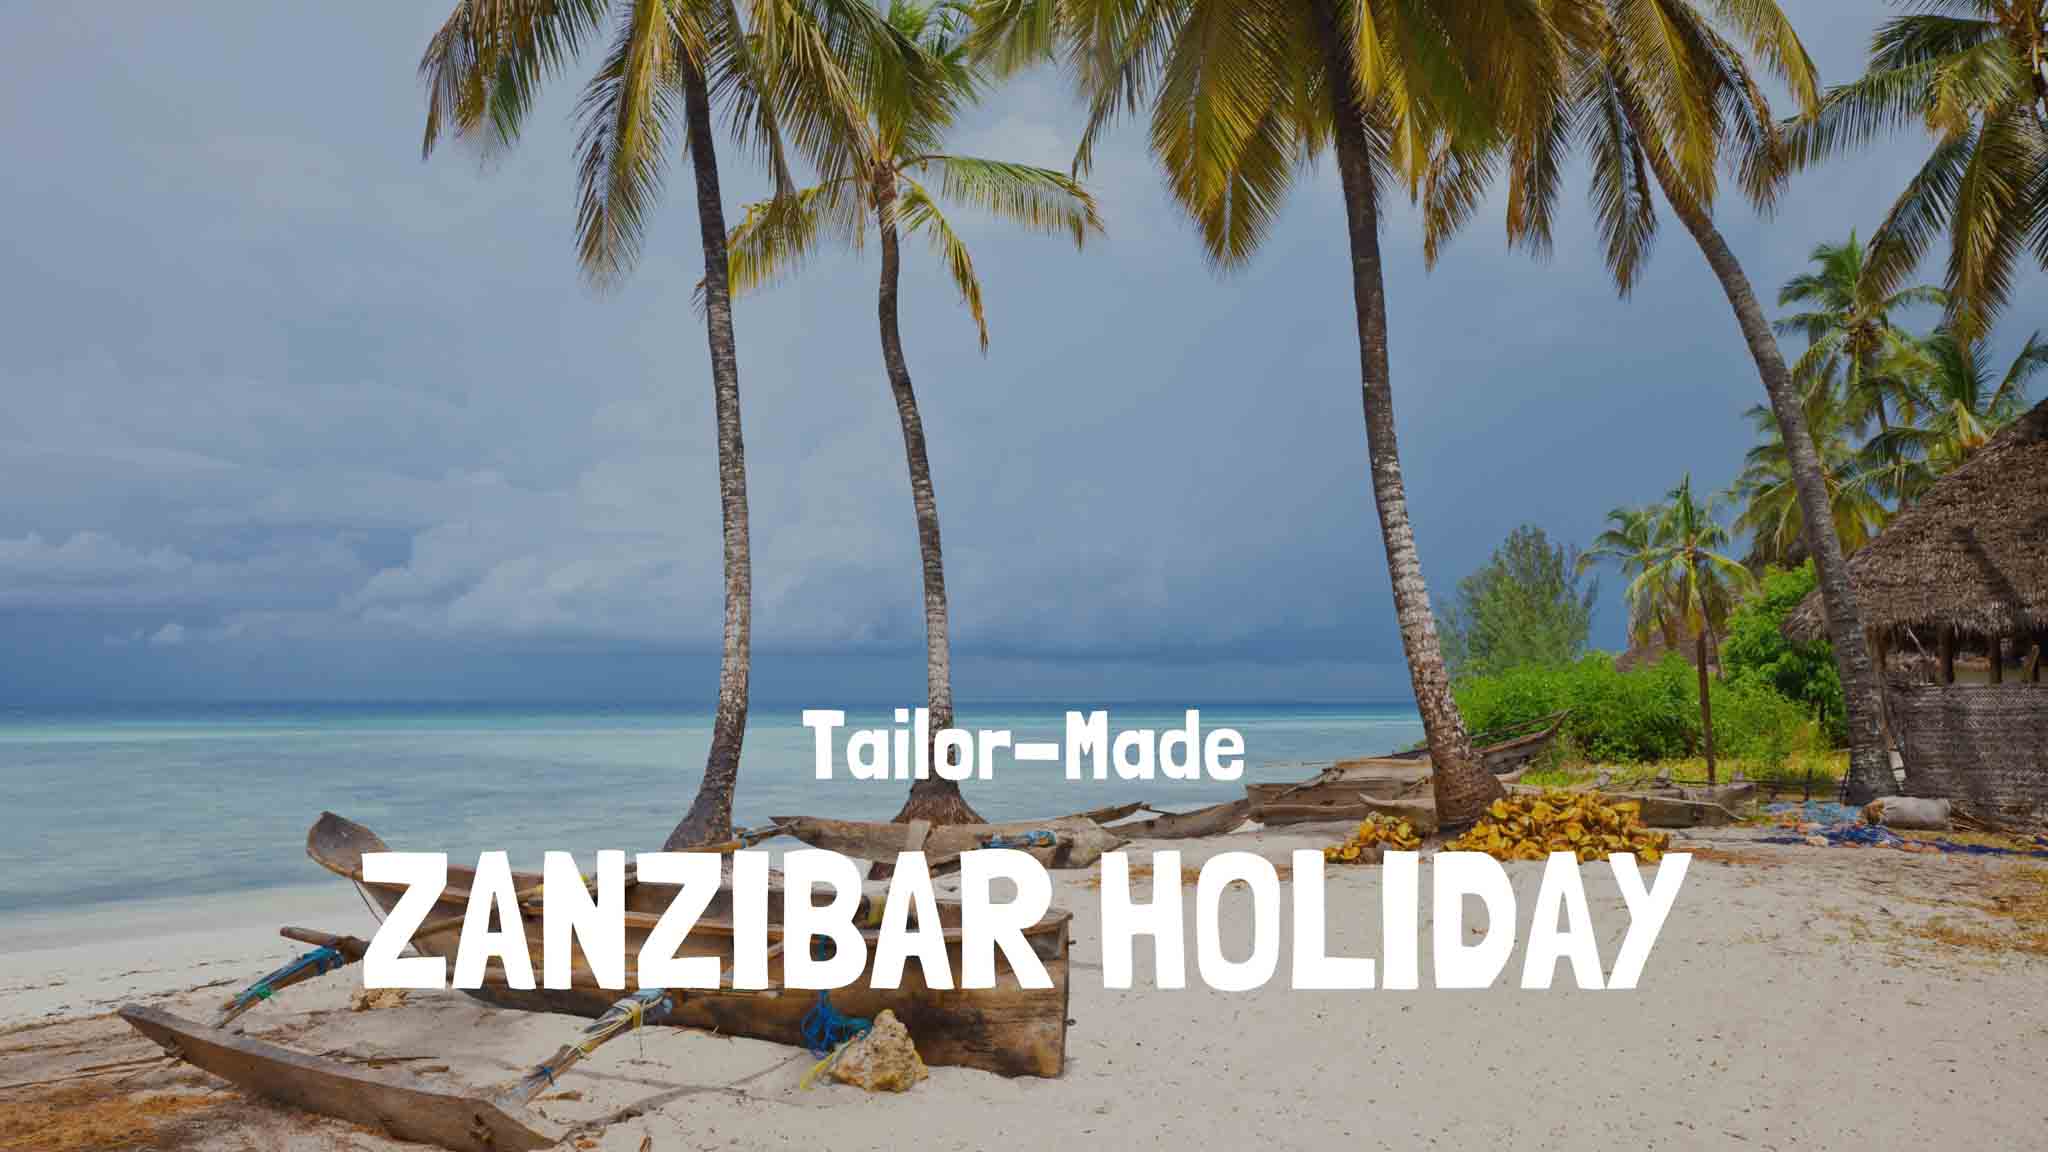 Zanzibar holiday Tanzania